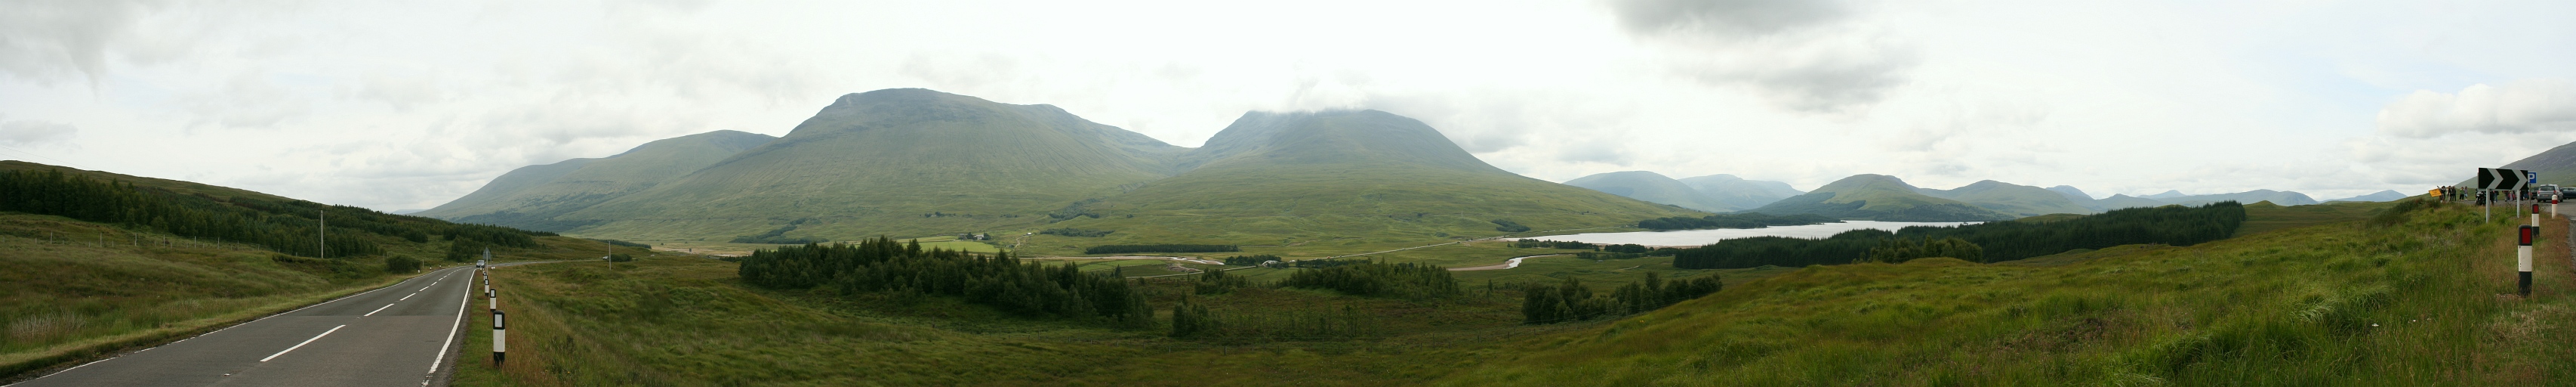 A view of Beinn Achaladair (3,406 ft), Beinn an Dothaidh (3,294 ft) and Loch Tulla from the A82 road (8.08.2010)